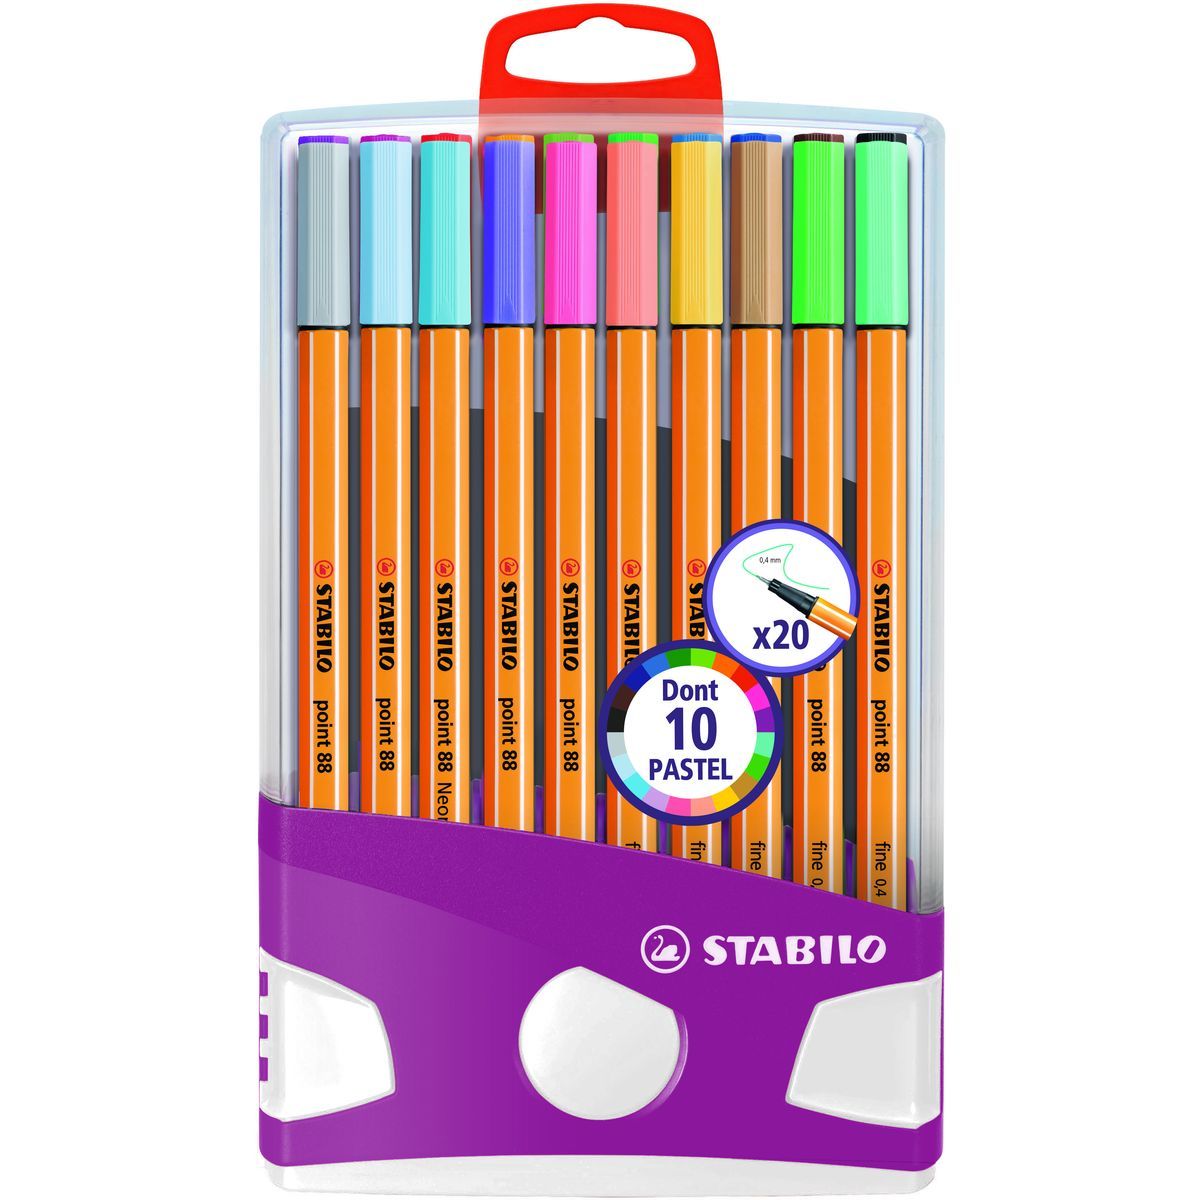 STABILO Lot de 20 stylos feutres pointe fine 0.4mm 10 éclatantes + 10  pastels Point 88 pas cher 